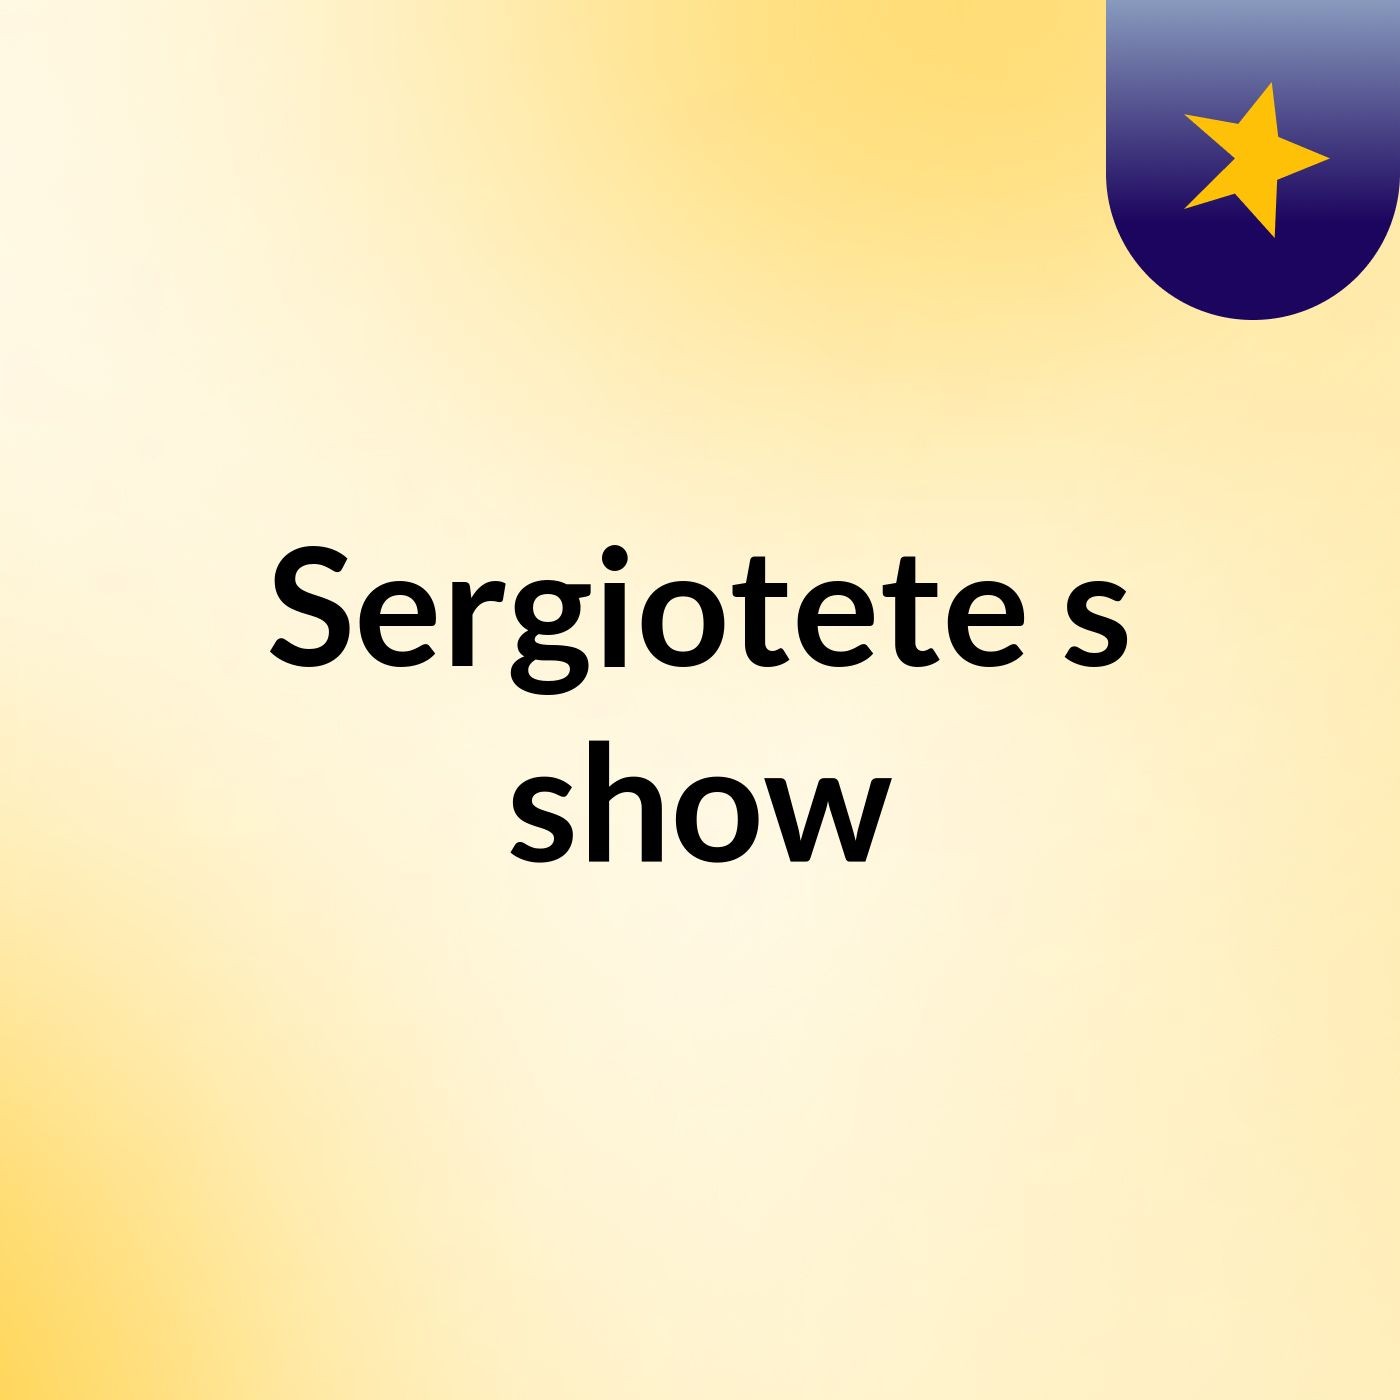 Sergiotete's show